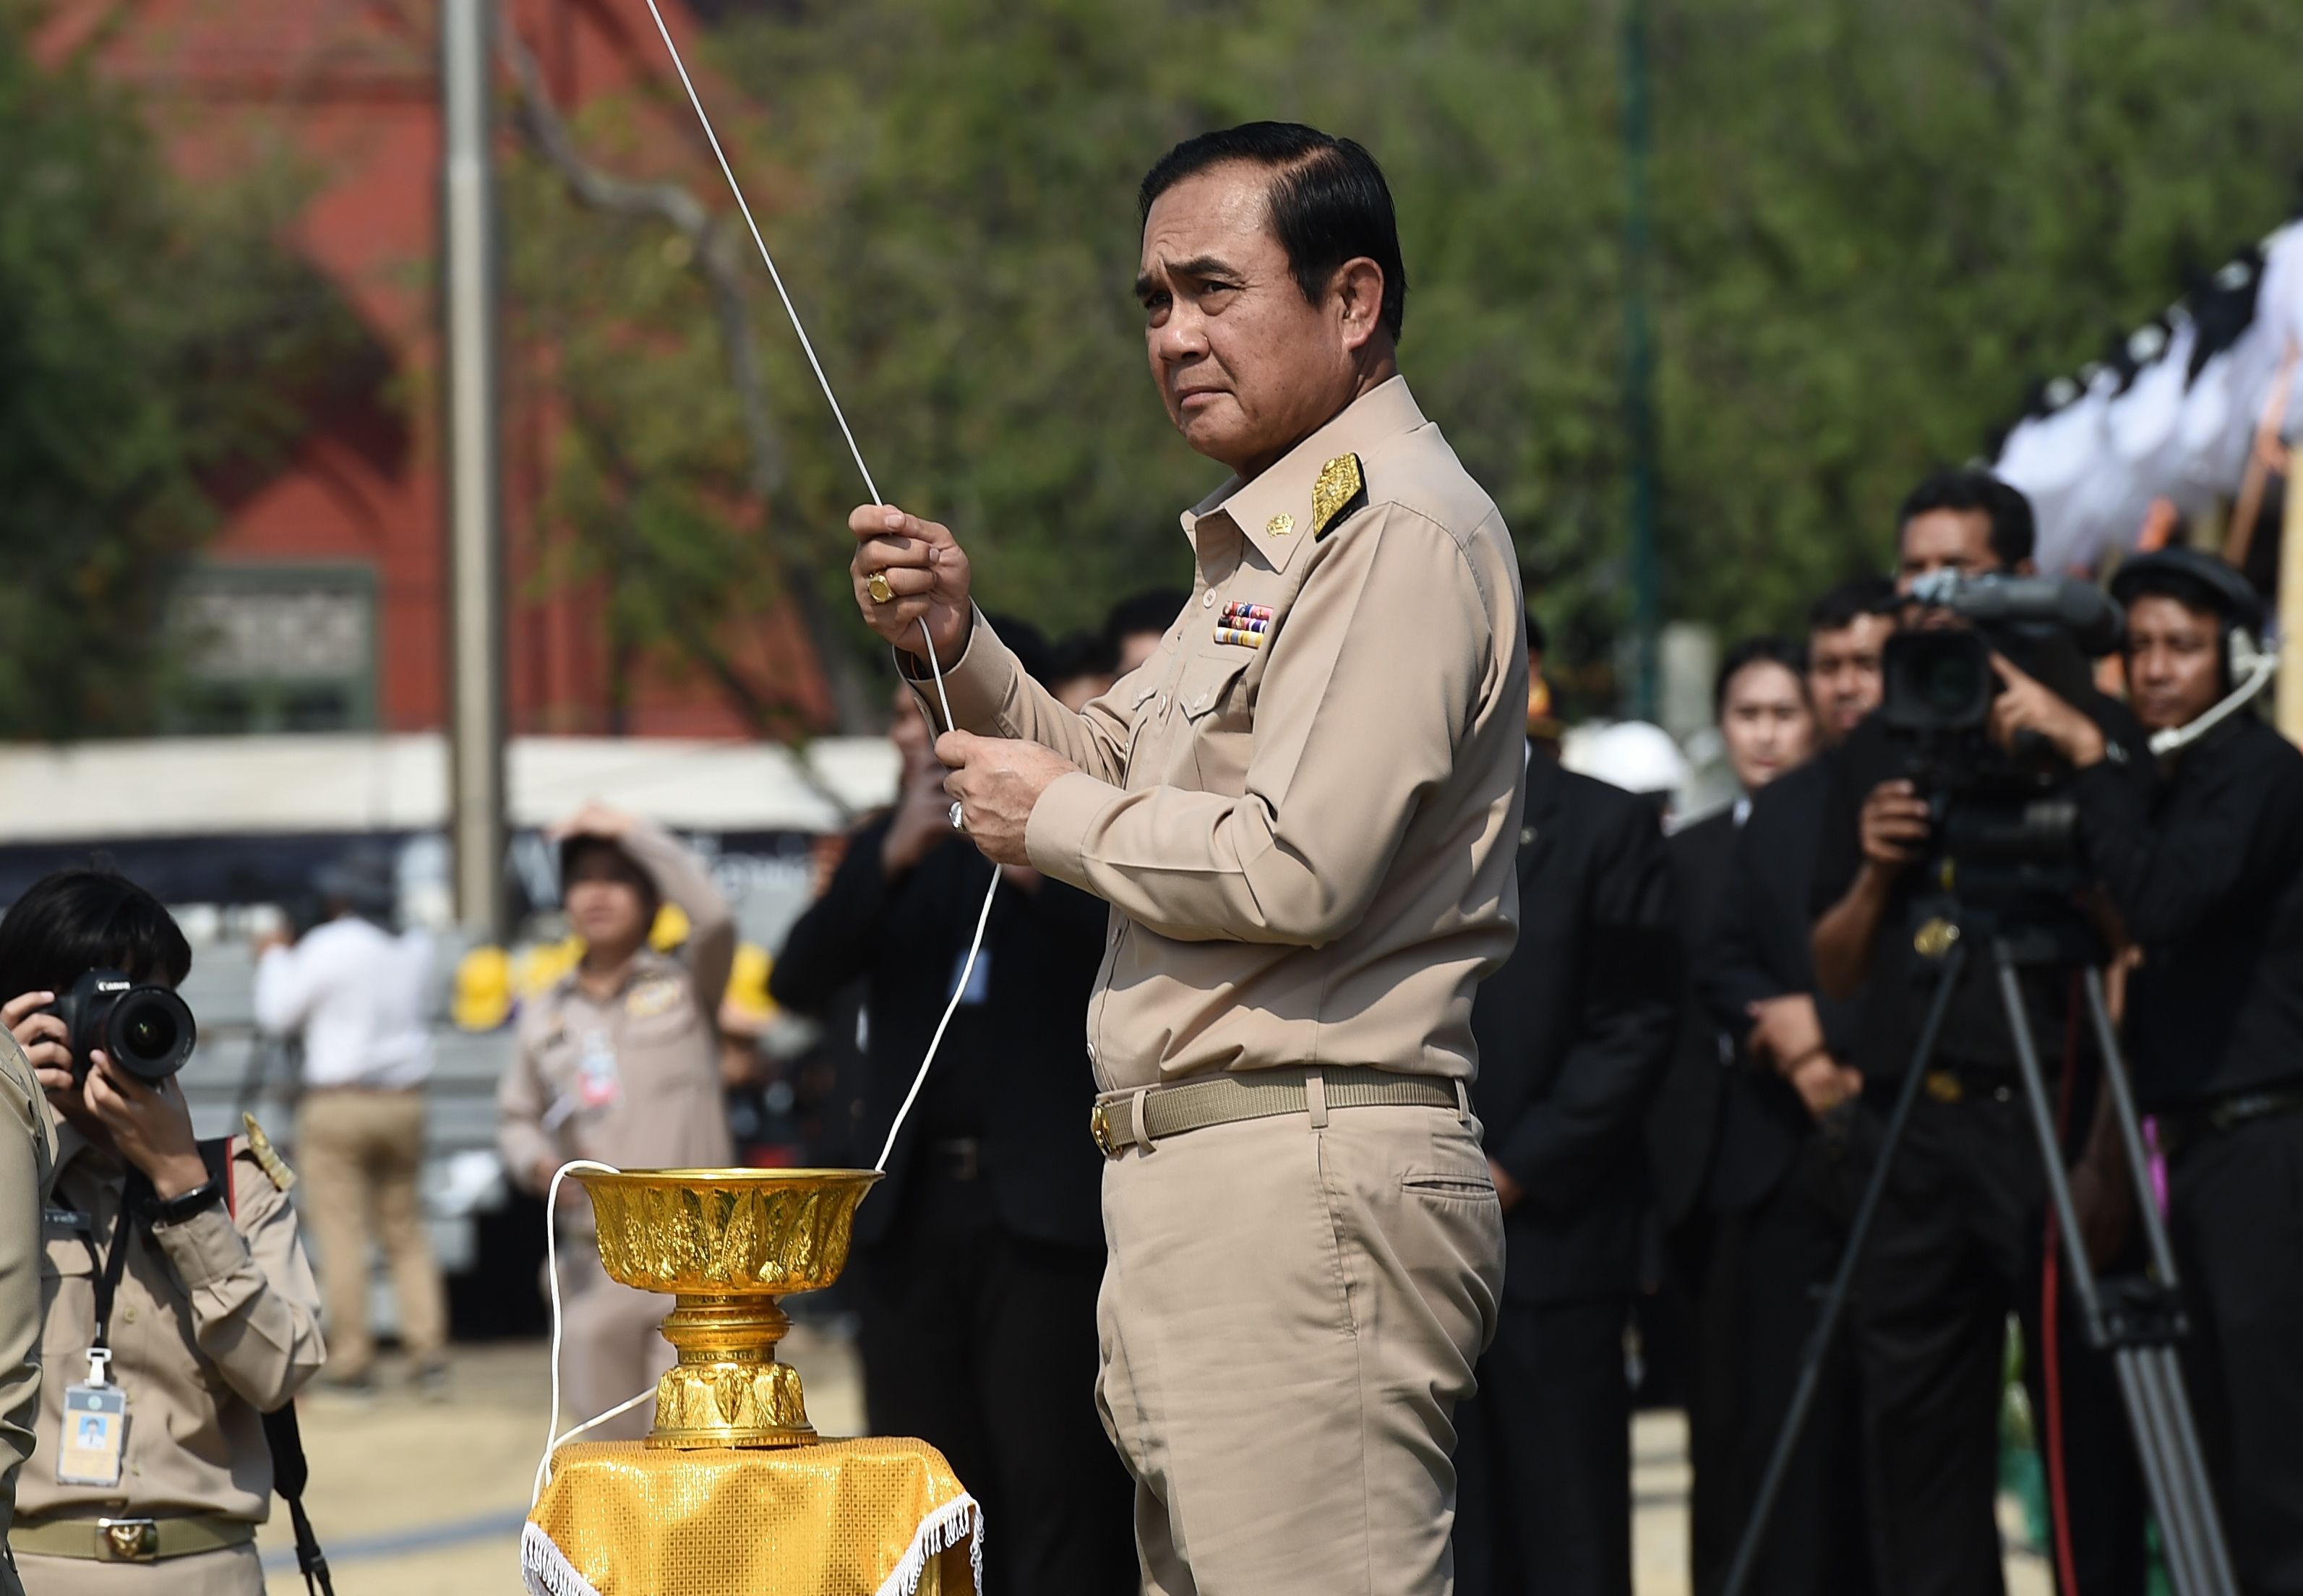 رئيس الوزراء التايلاندى برايوت تشان أوتشا يرفع علم الدولة على منصة المحرقة الجنائزية لملك تايلاند الراحل